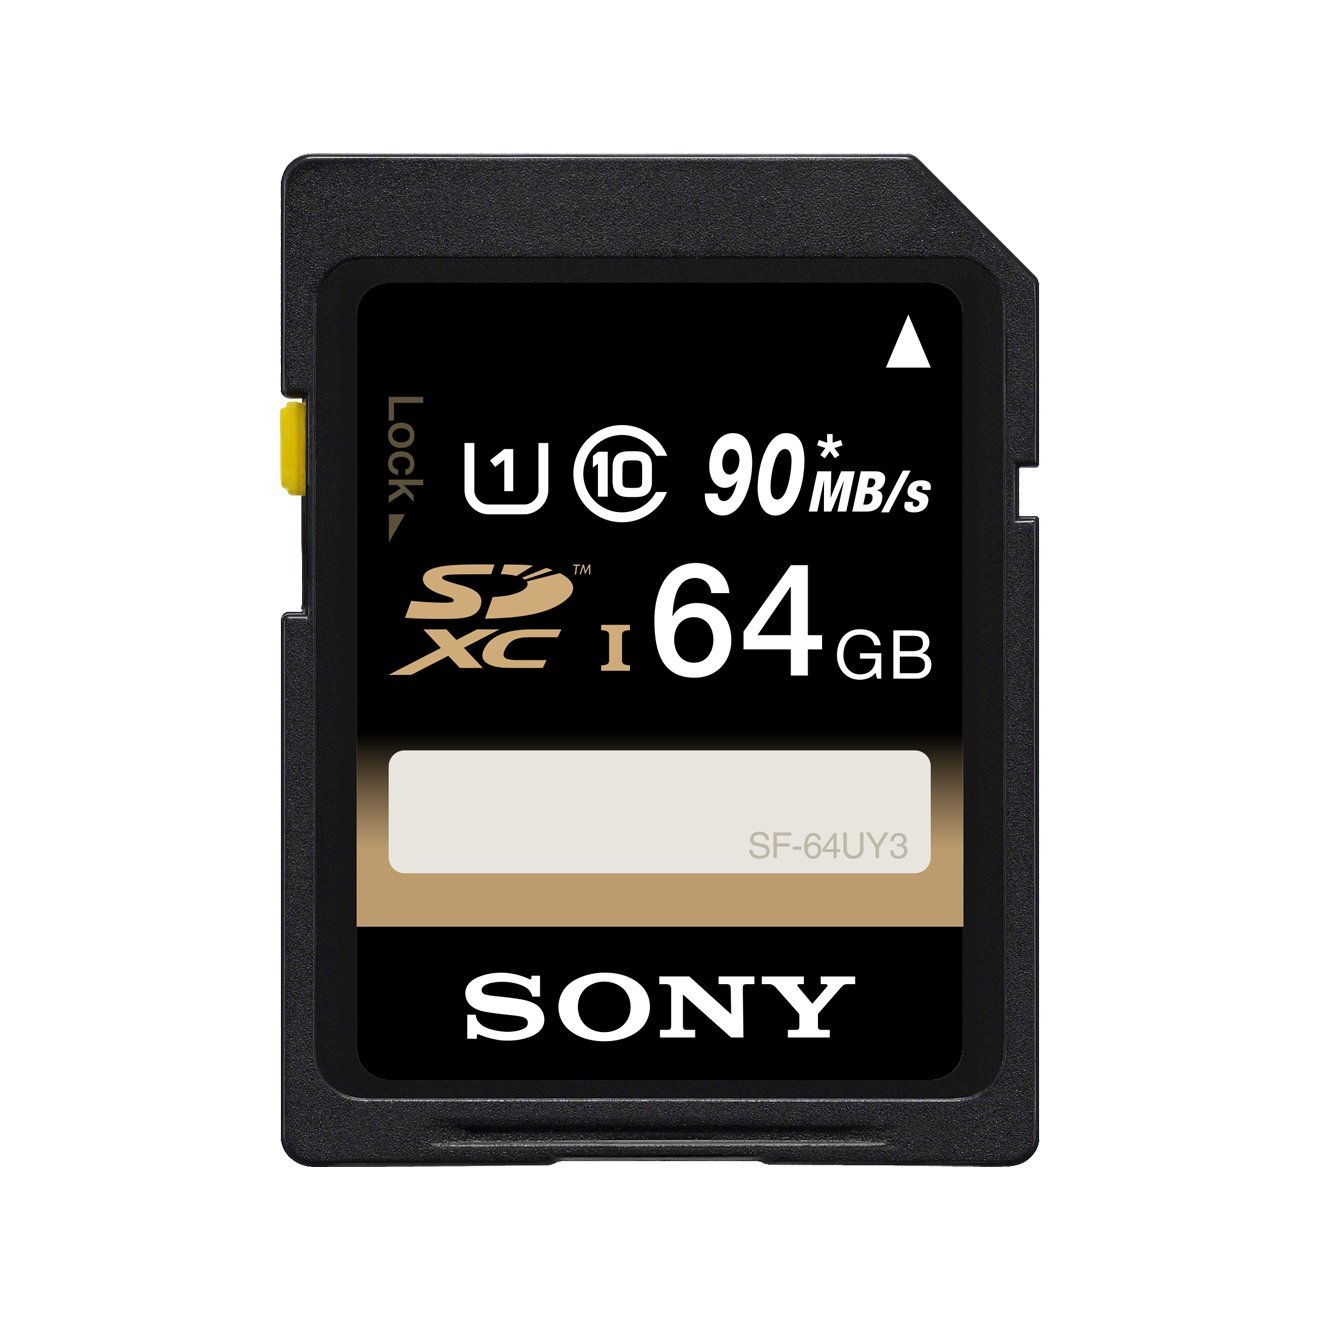 Pour la compatibilité voir la description 64 Go Carte mémoire SDXC Classe 10 UHS-1-45Mo/sec pour appareils photo Sony Cyber-shot DSC-W/WX Dot.Foto 